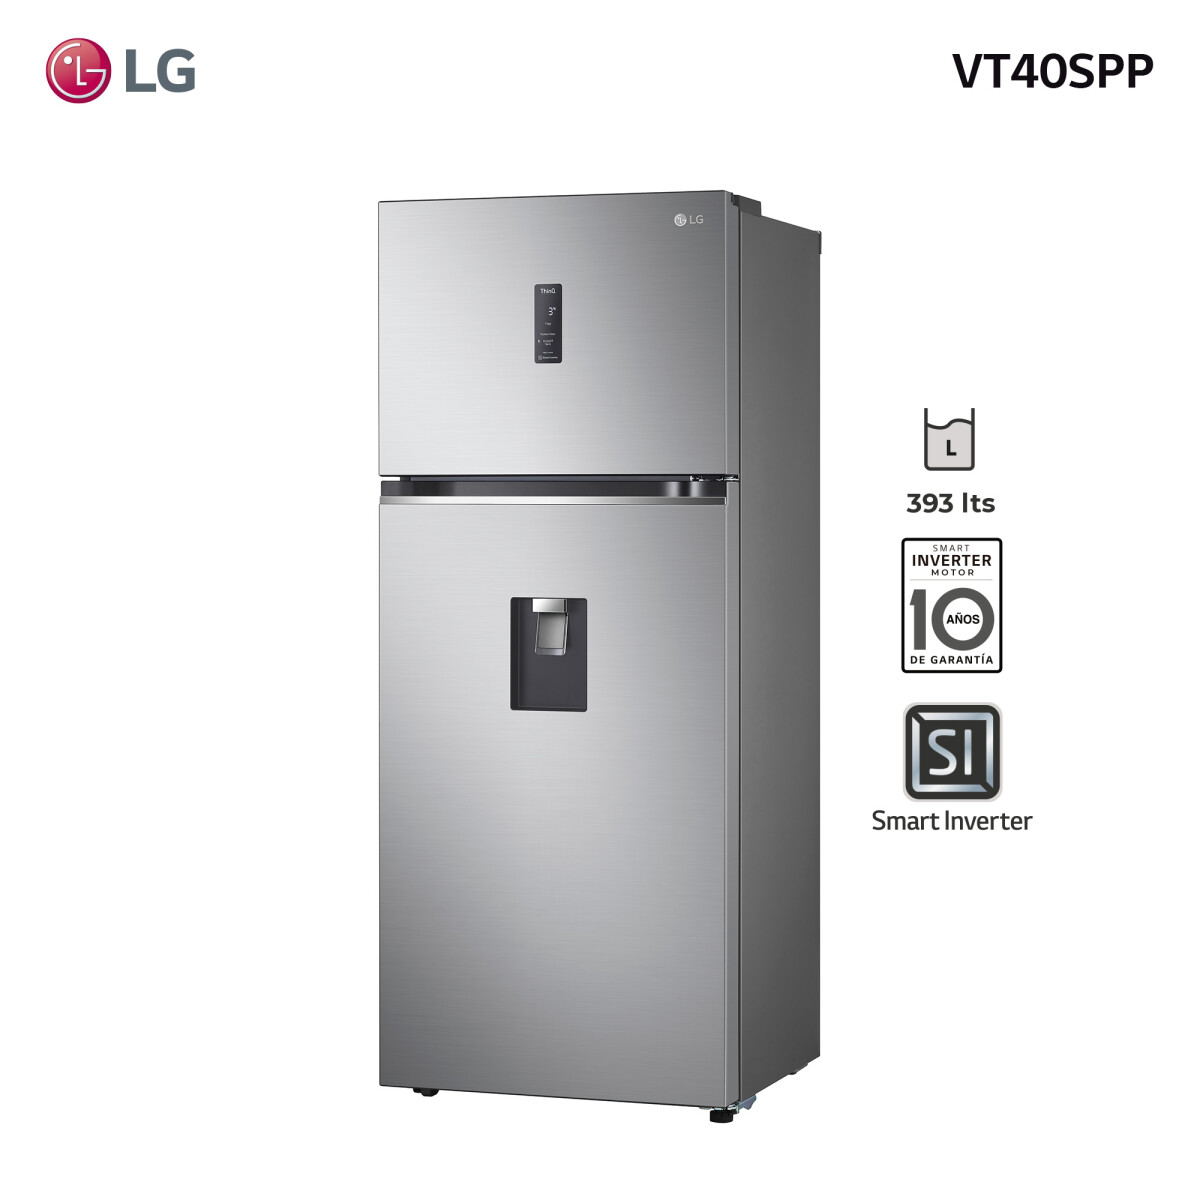 Refrigerador LG inverter 423L VT40SPP - 001 